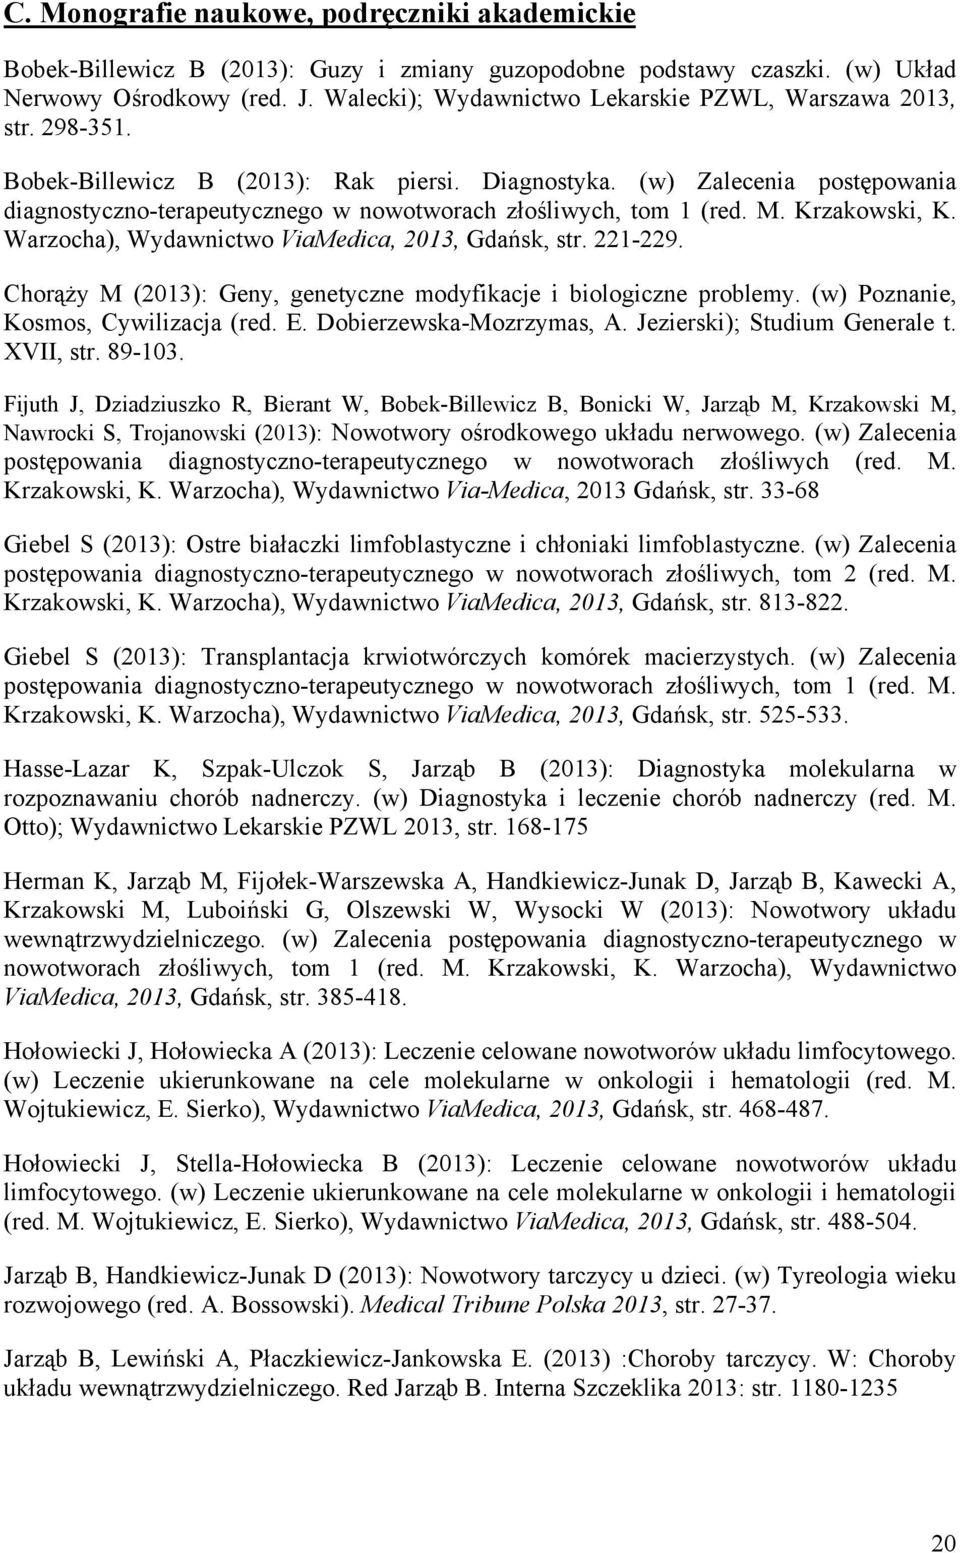 (w) Zalecenia postępowania diagnostyczno-terapeutycznego w nowotworach złośliwych, tom 1 (red. M. Krzakowski, K. Warzocha), Wydawnictwo ViaMedica, 2013, Gdańsk, str. 221-229.